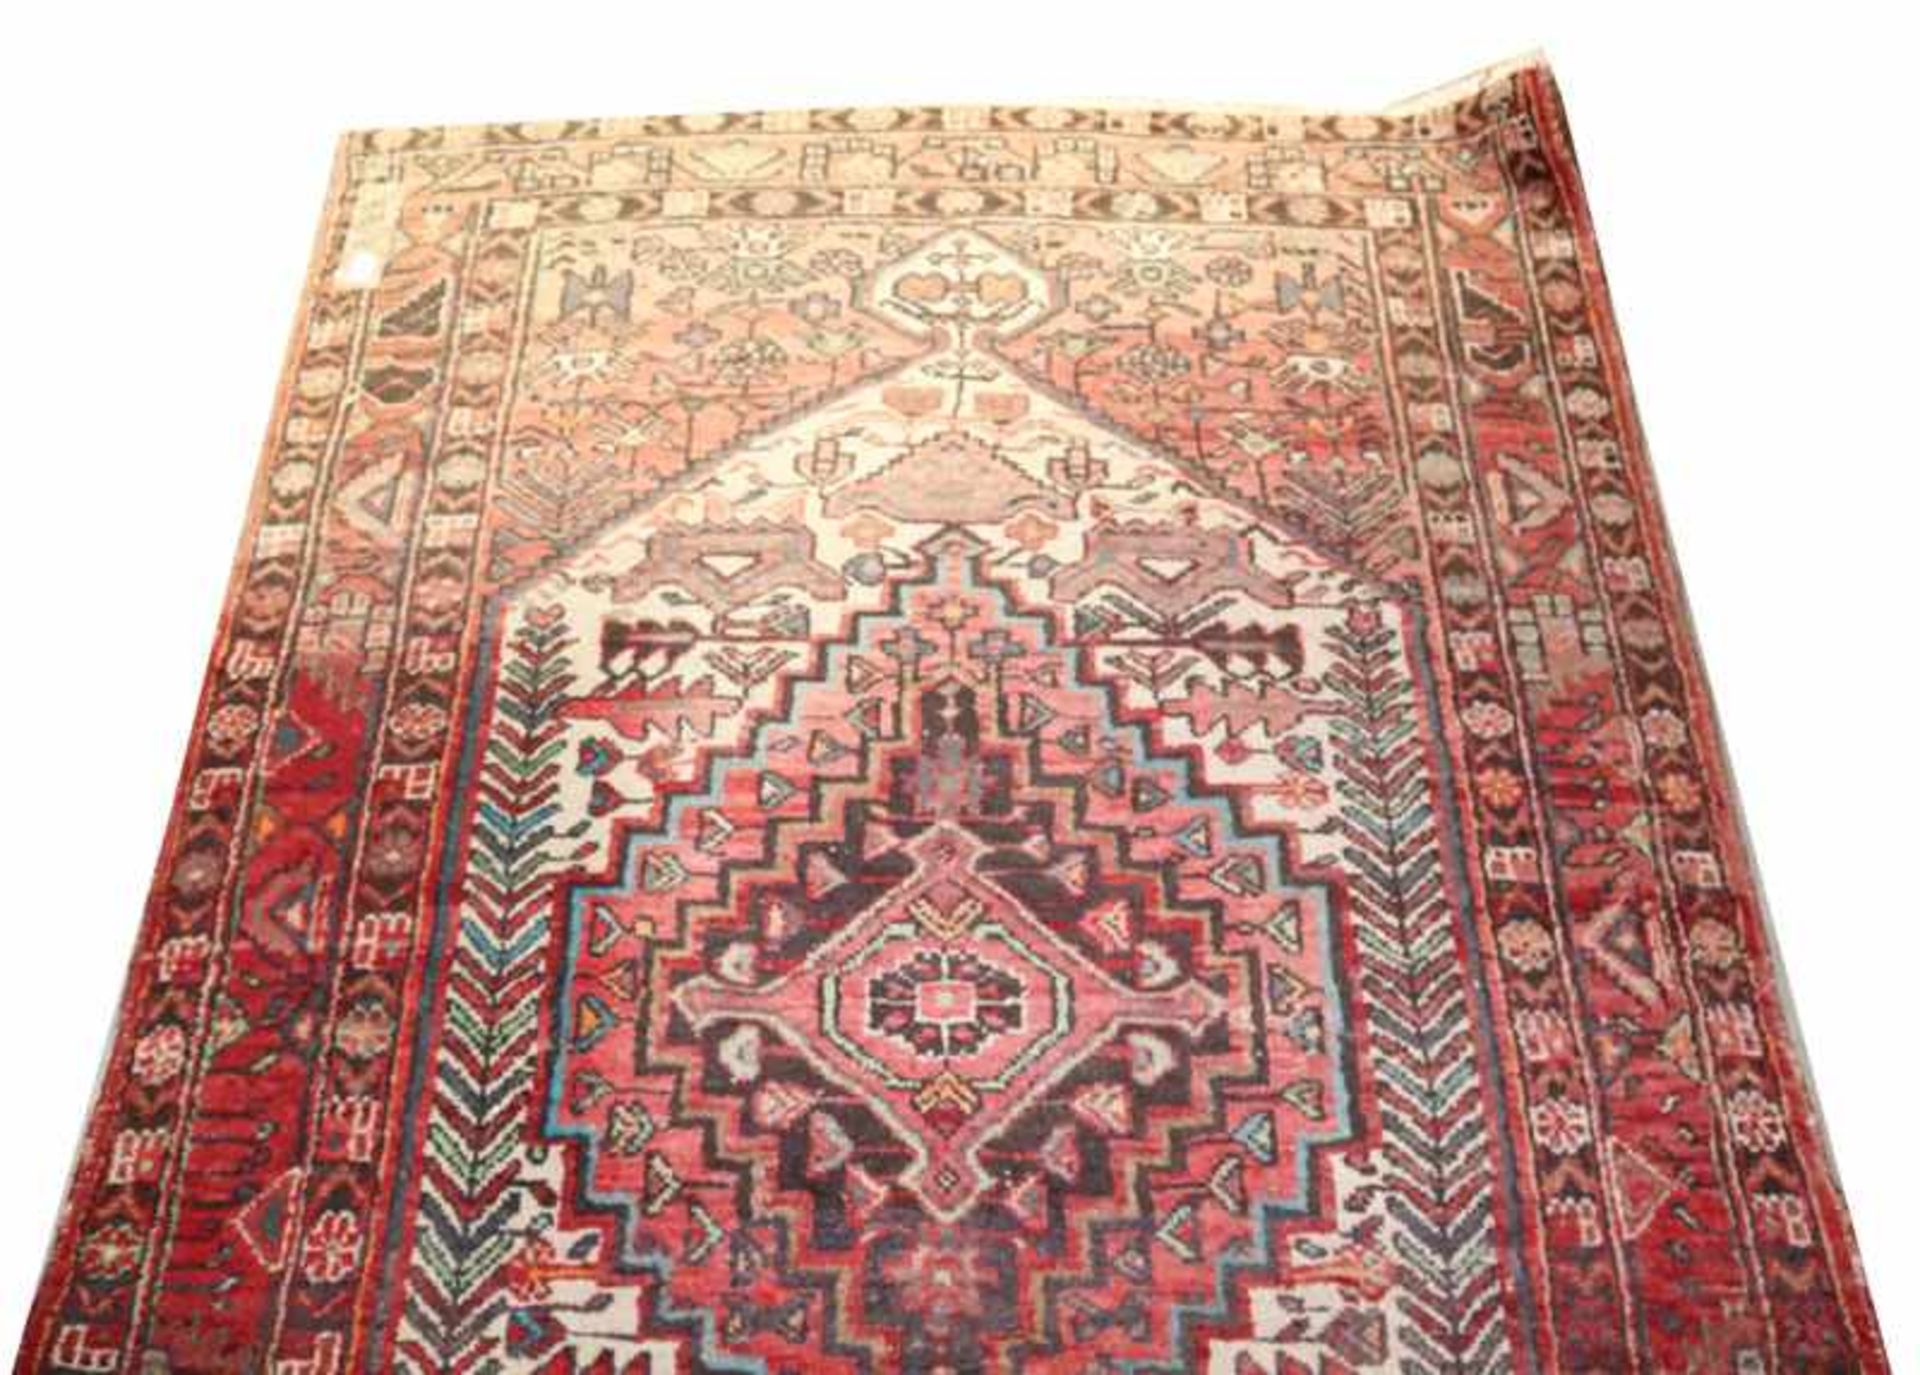 Teppich, beige/rot, teils verblast, Gebrauchsspuren, 225 cm x 136 cm